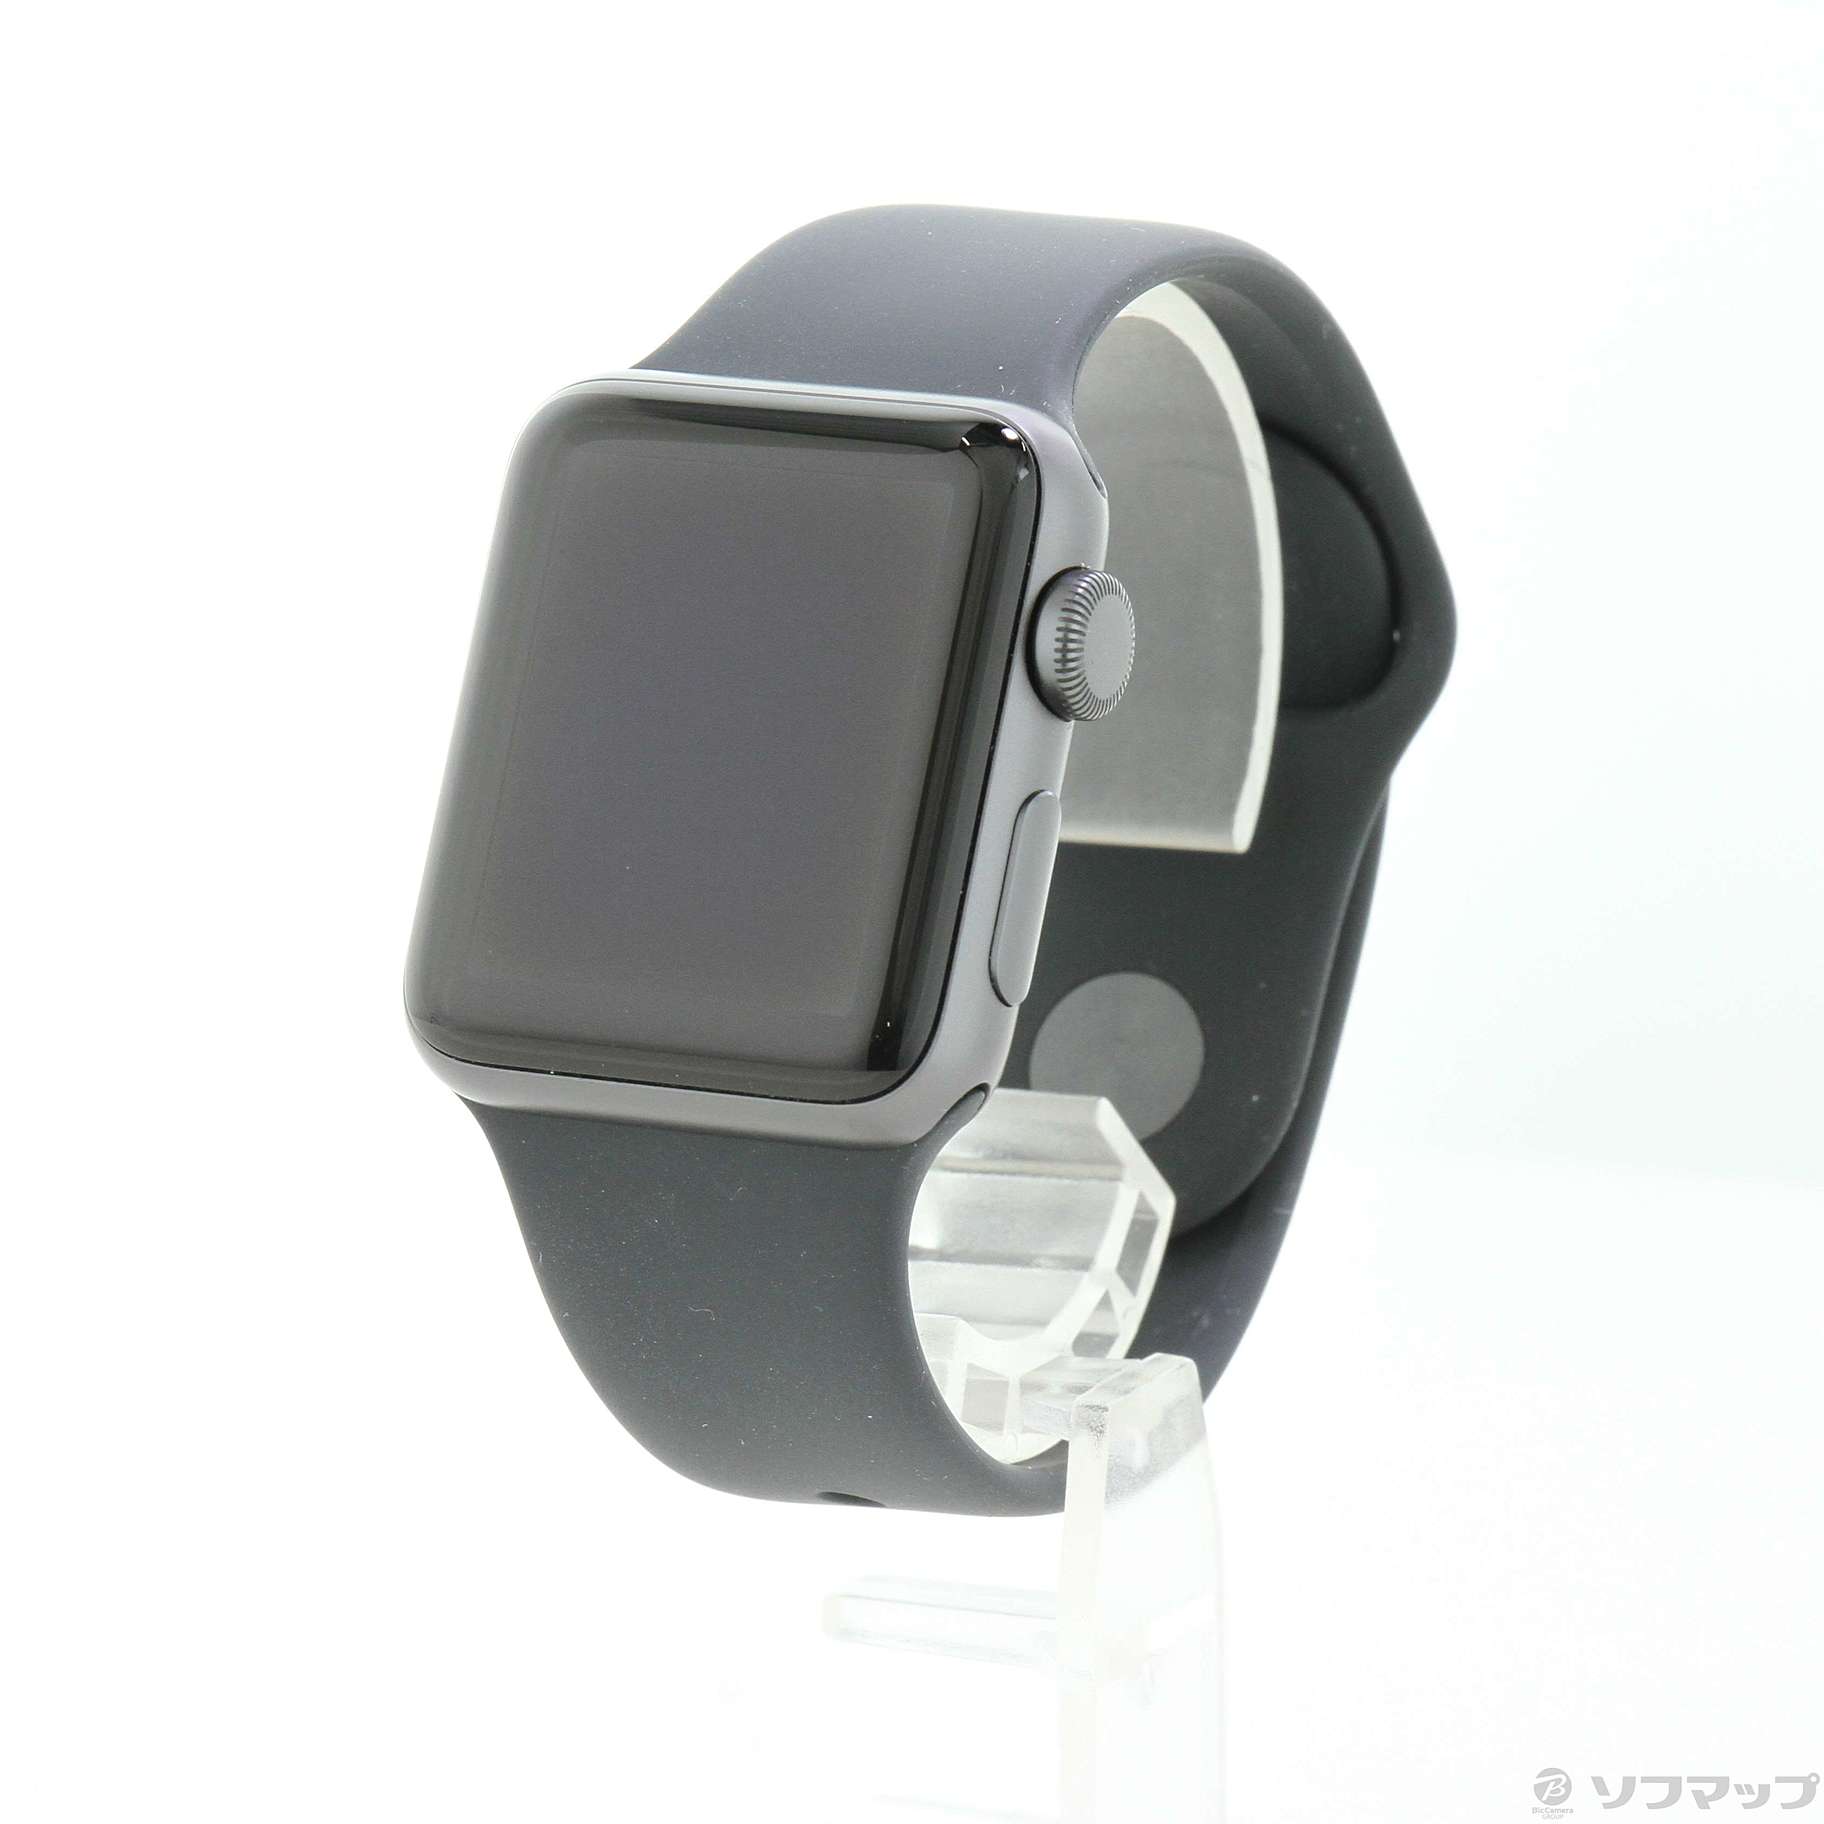 中古品〕 Apple Watch Series 3 GPS 38mm スペースグレイアルミニウム ...